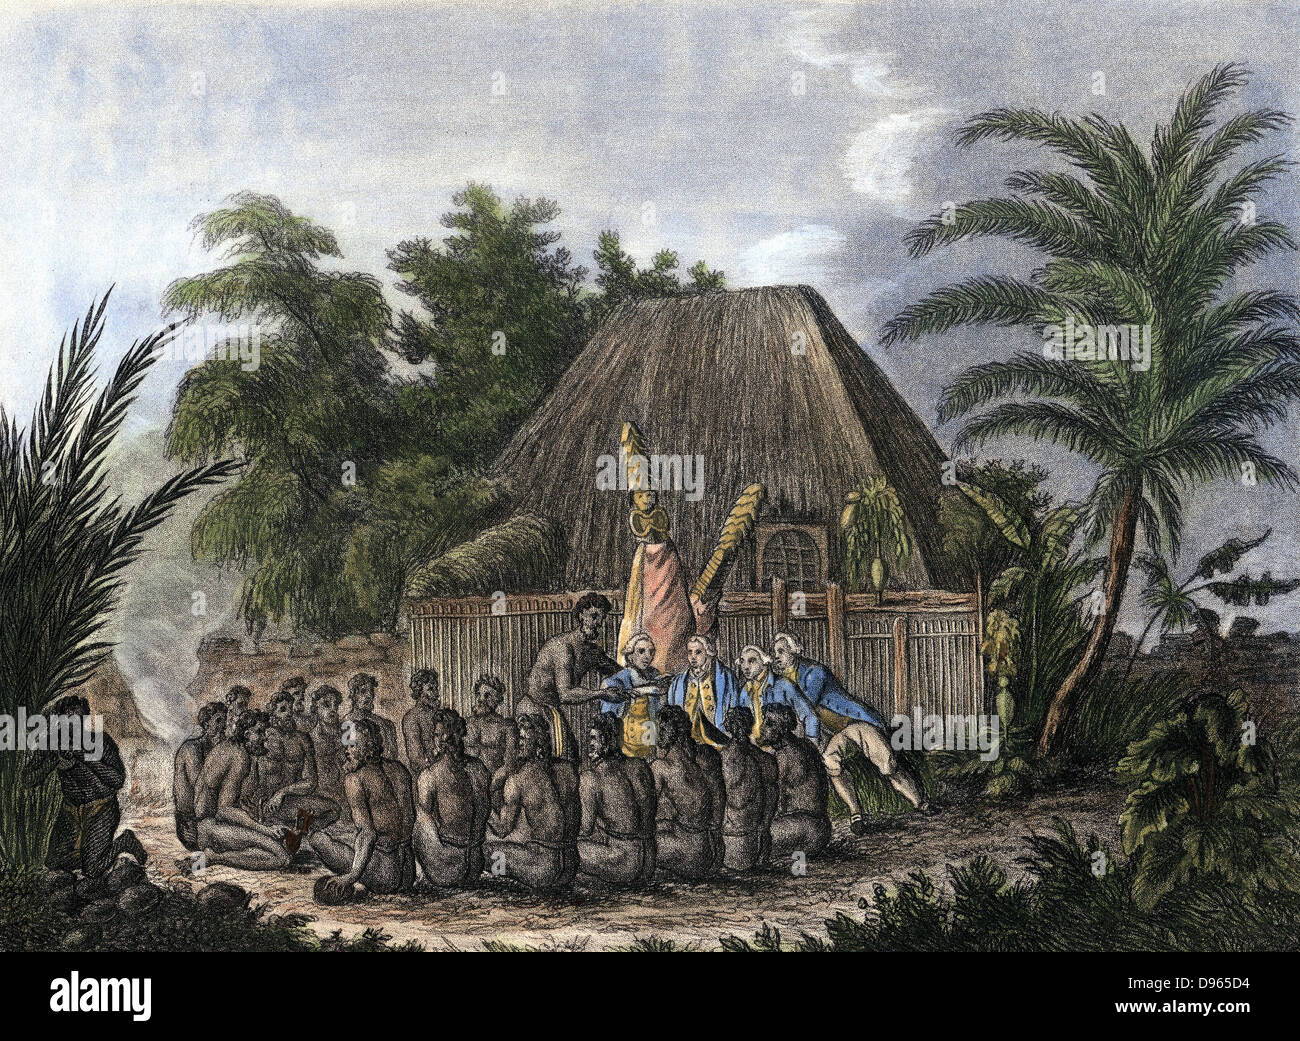 James Cook (1728-79) Inglés, Explorer y Navigator hidrógrafo recibiendo homenaje ritual de Sandwich isleños, de 1779, durante su tercer viaje del Pacífico. Grabado pintado a mano de 1832. Foto de stock